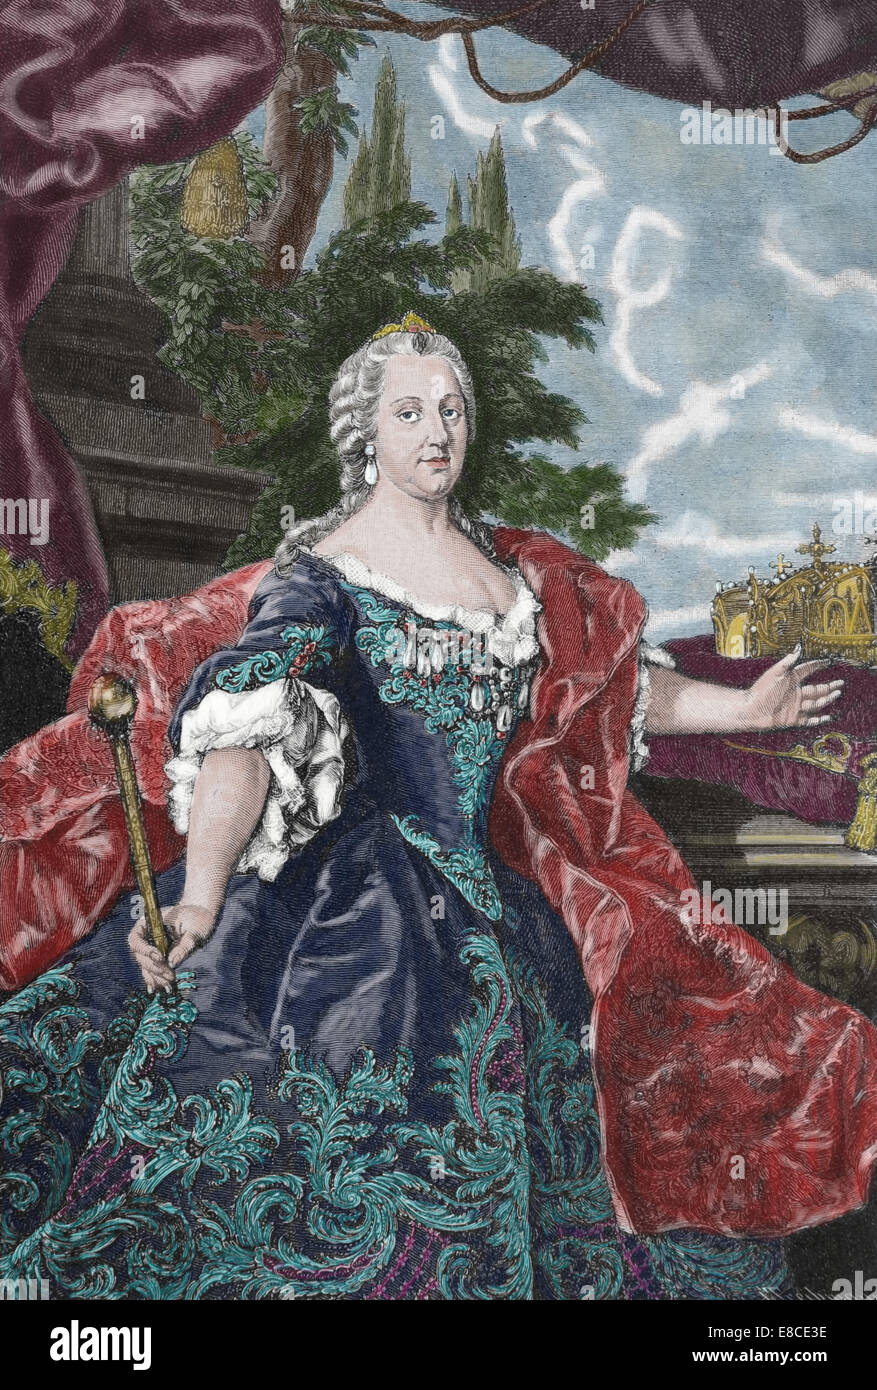 Maria Theresa von Österreich, 1717-1780, souveränen von Österreich und Königin von Ungarn und Böhmen. Gravur. Farbe. Stockfoto